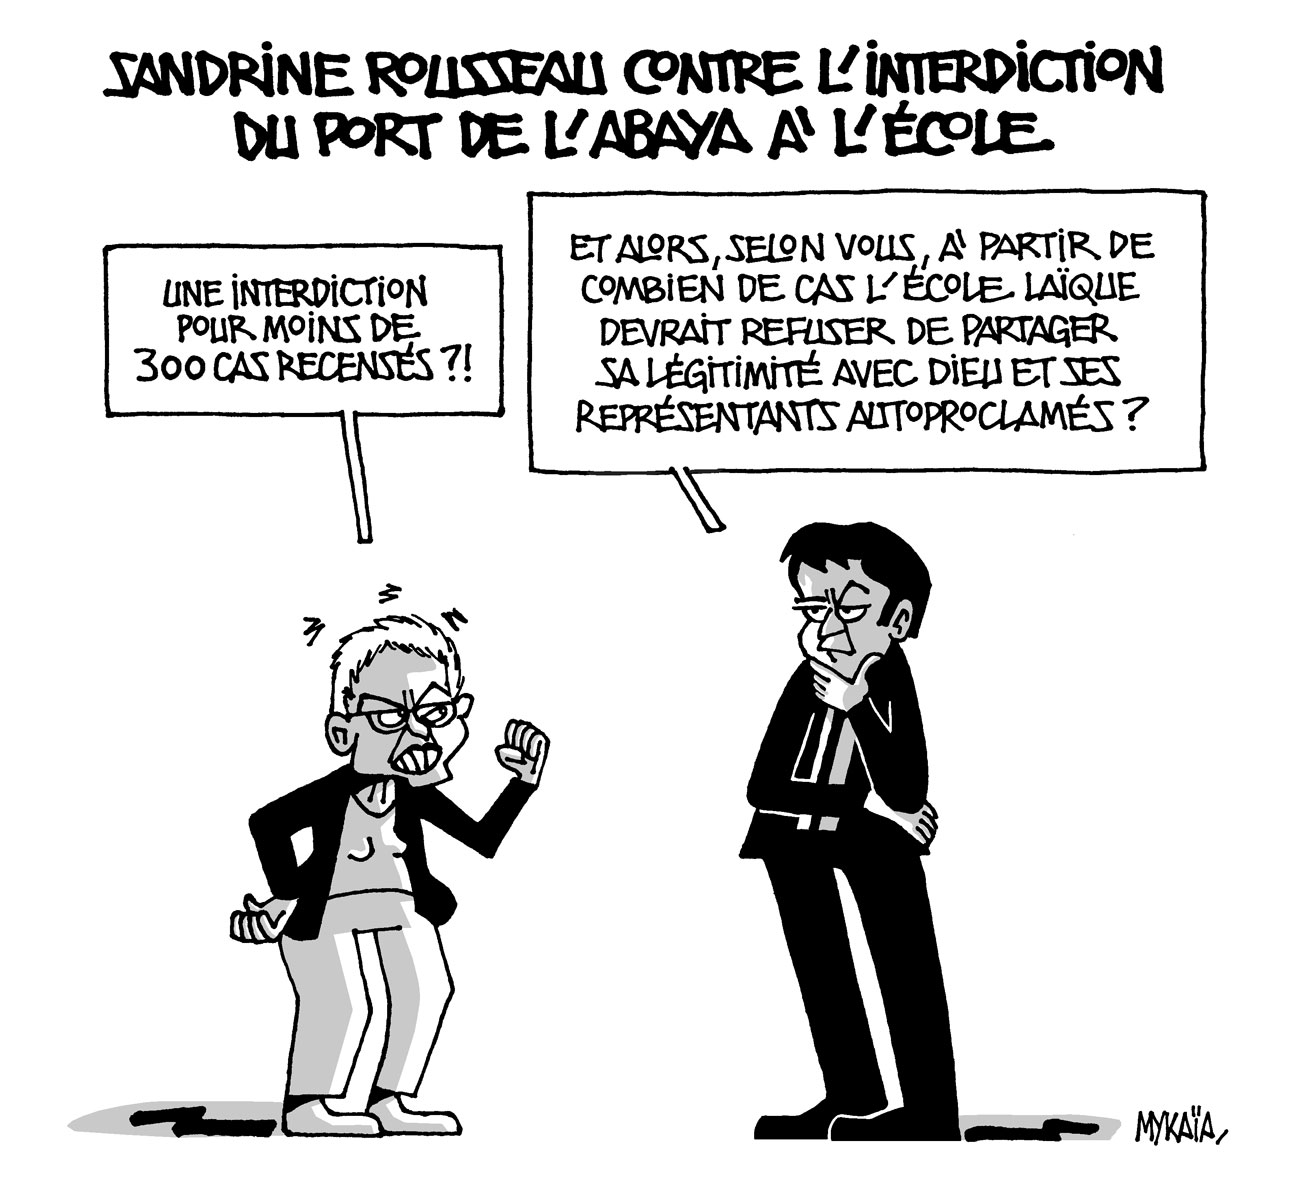 Sandrine Rousseau contre l'interdiction du port de l'abaya à l'école